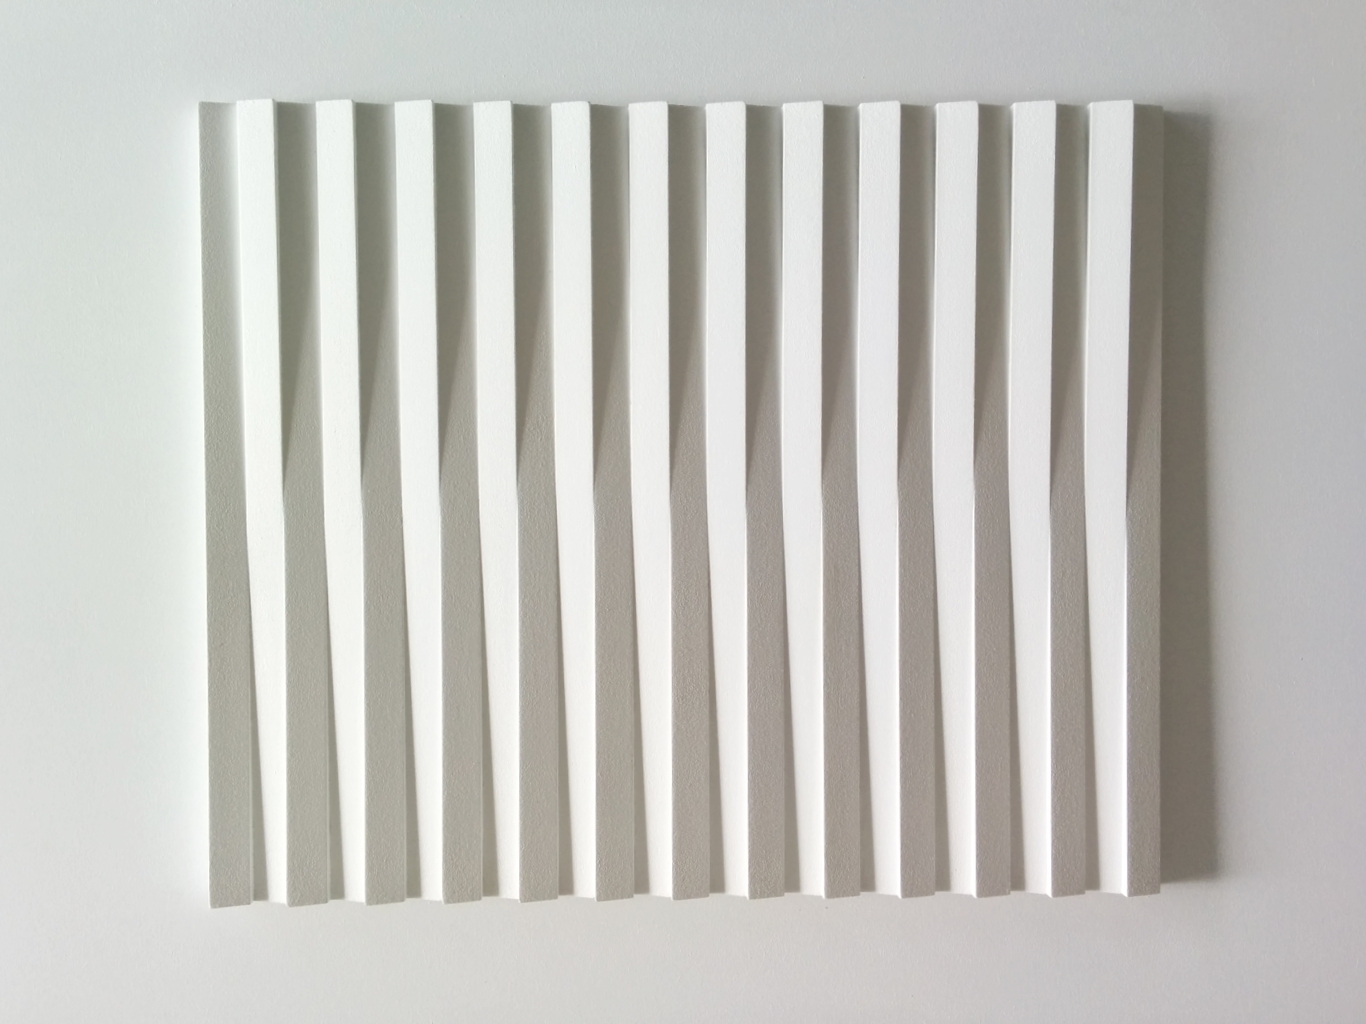 Sander Martijn Jonker, 2016, abstract relief, R166, 74,5 x 61 cm